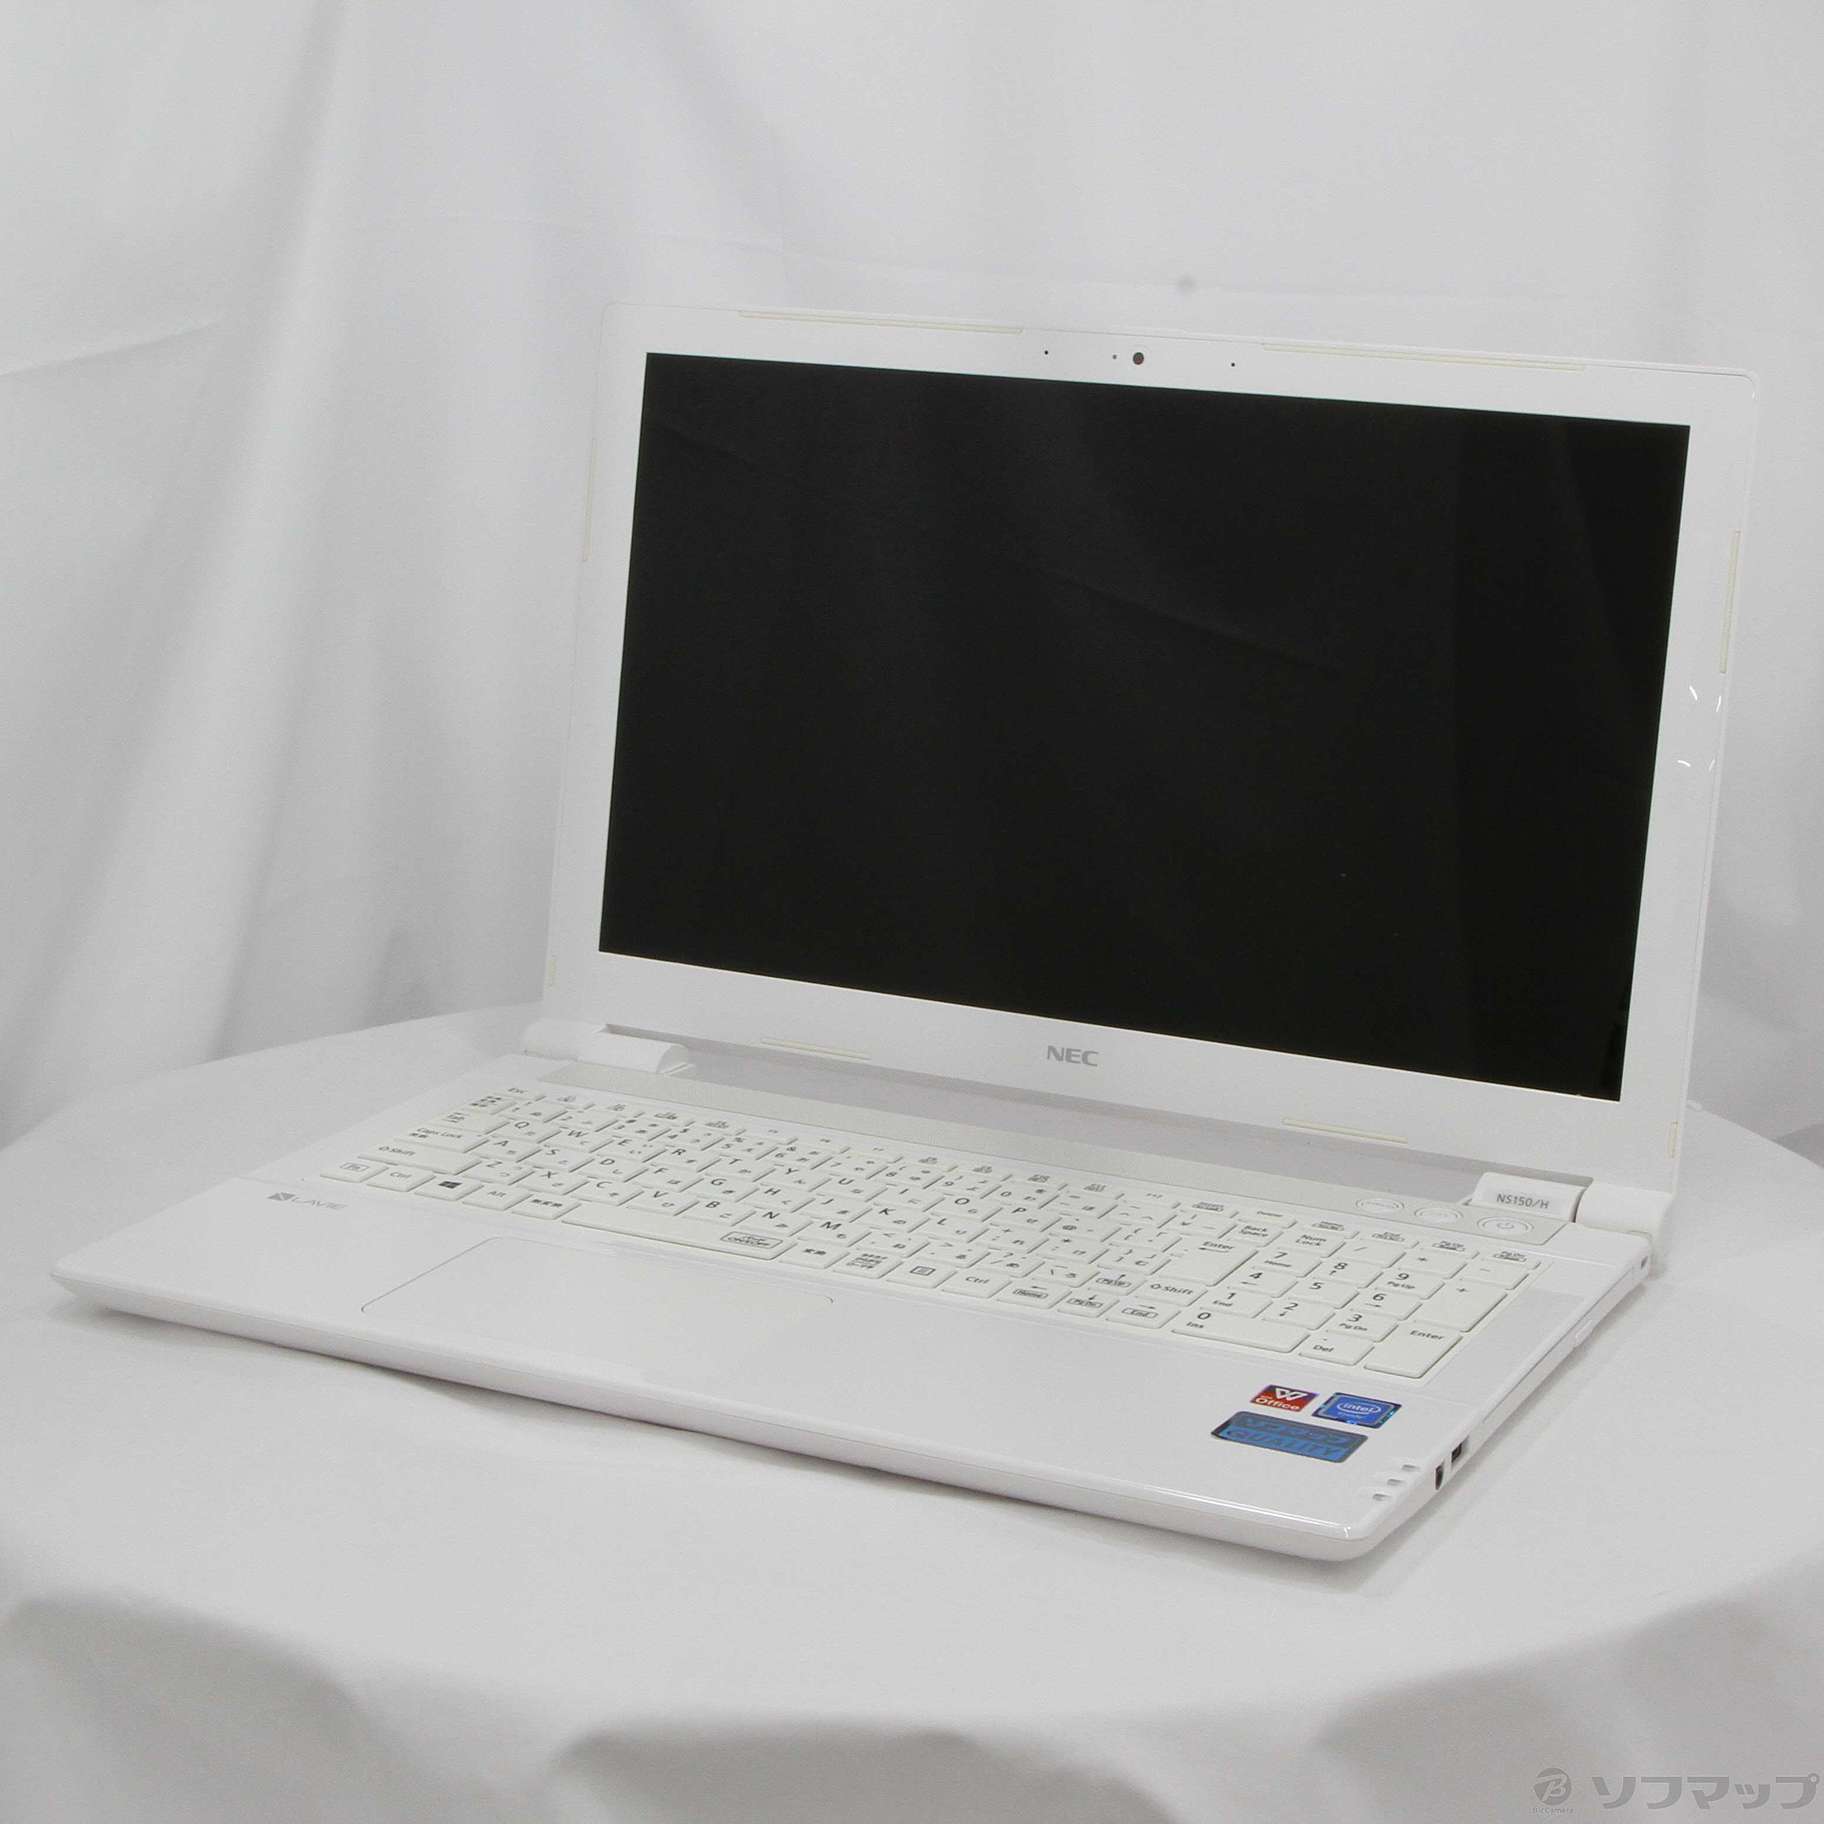 セール対象品 LaVie Note Standard PC-NS150HAW-YC エクストラホワイト 〔Windows 10〕